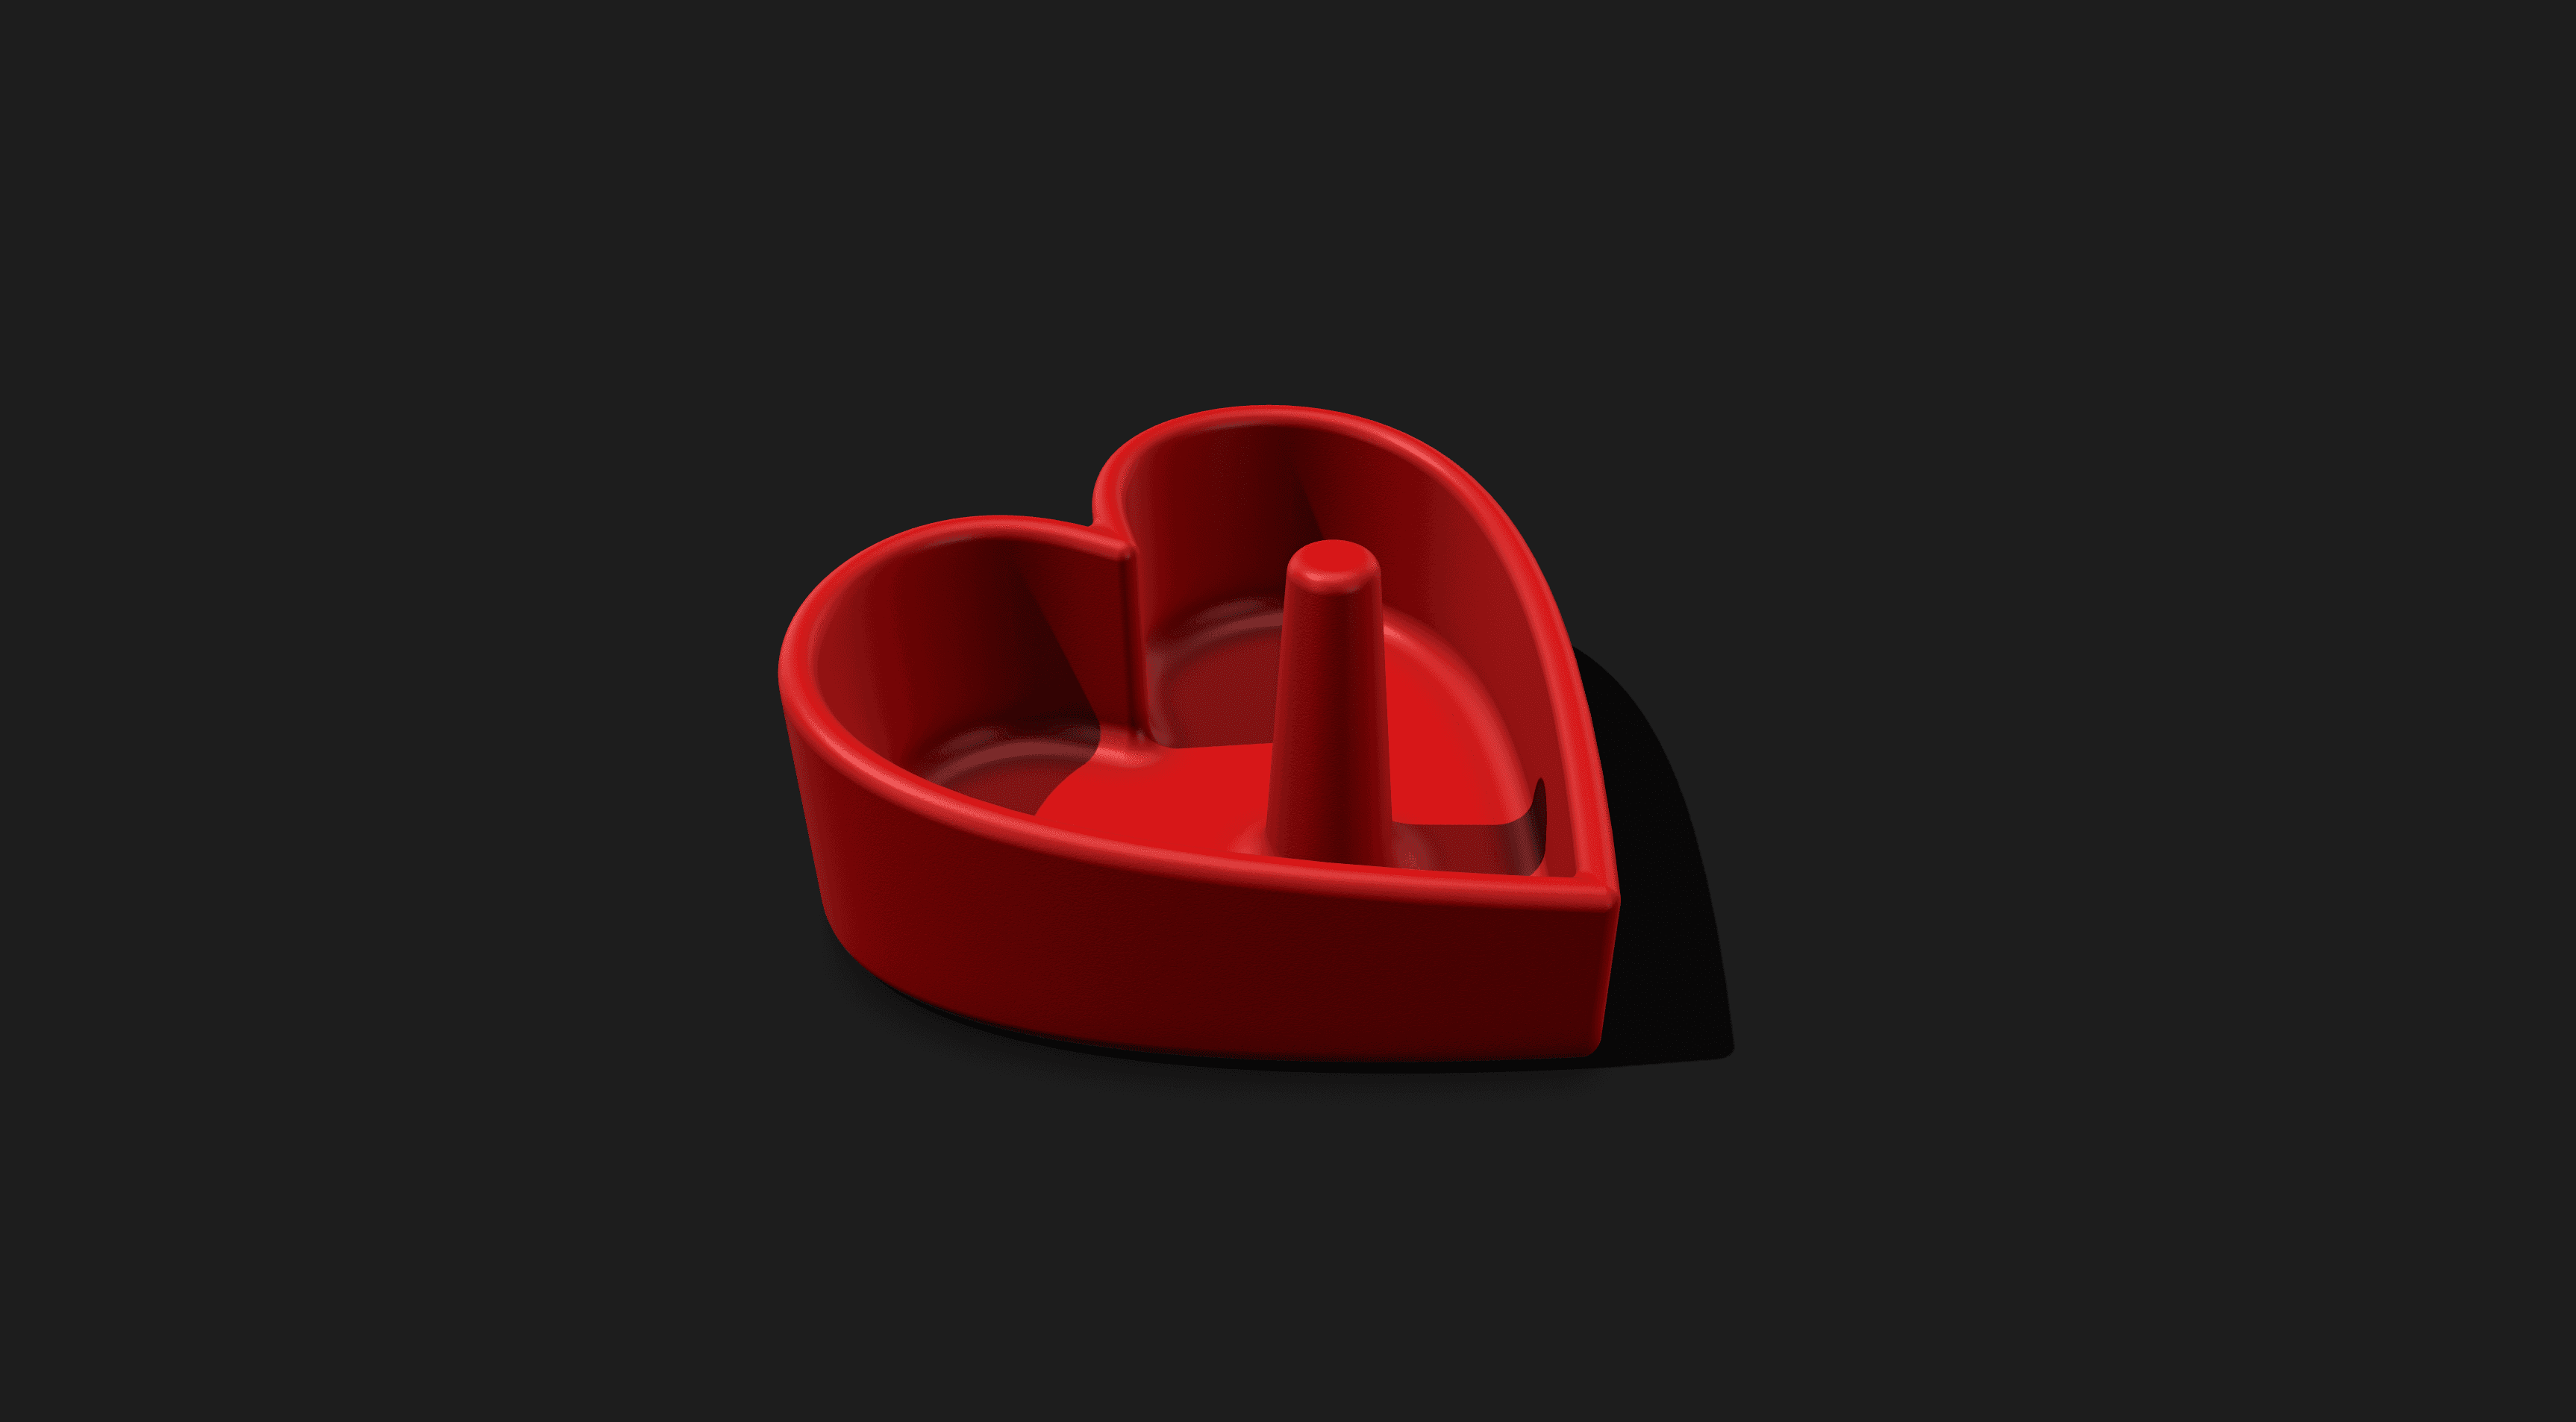 Heart Ring Holder Remix 3d model